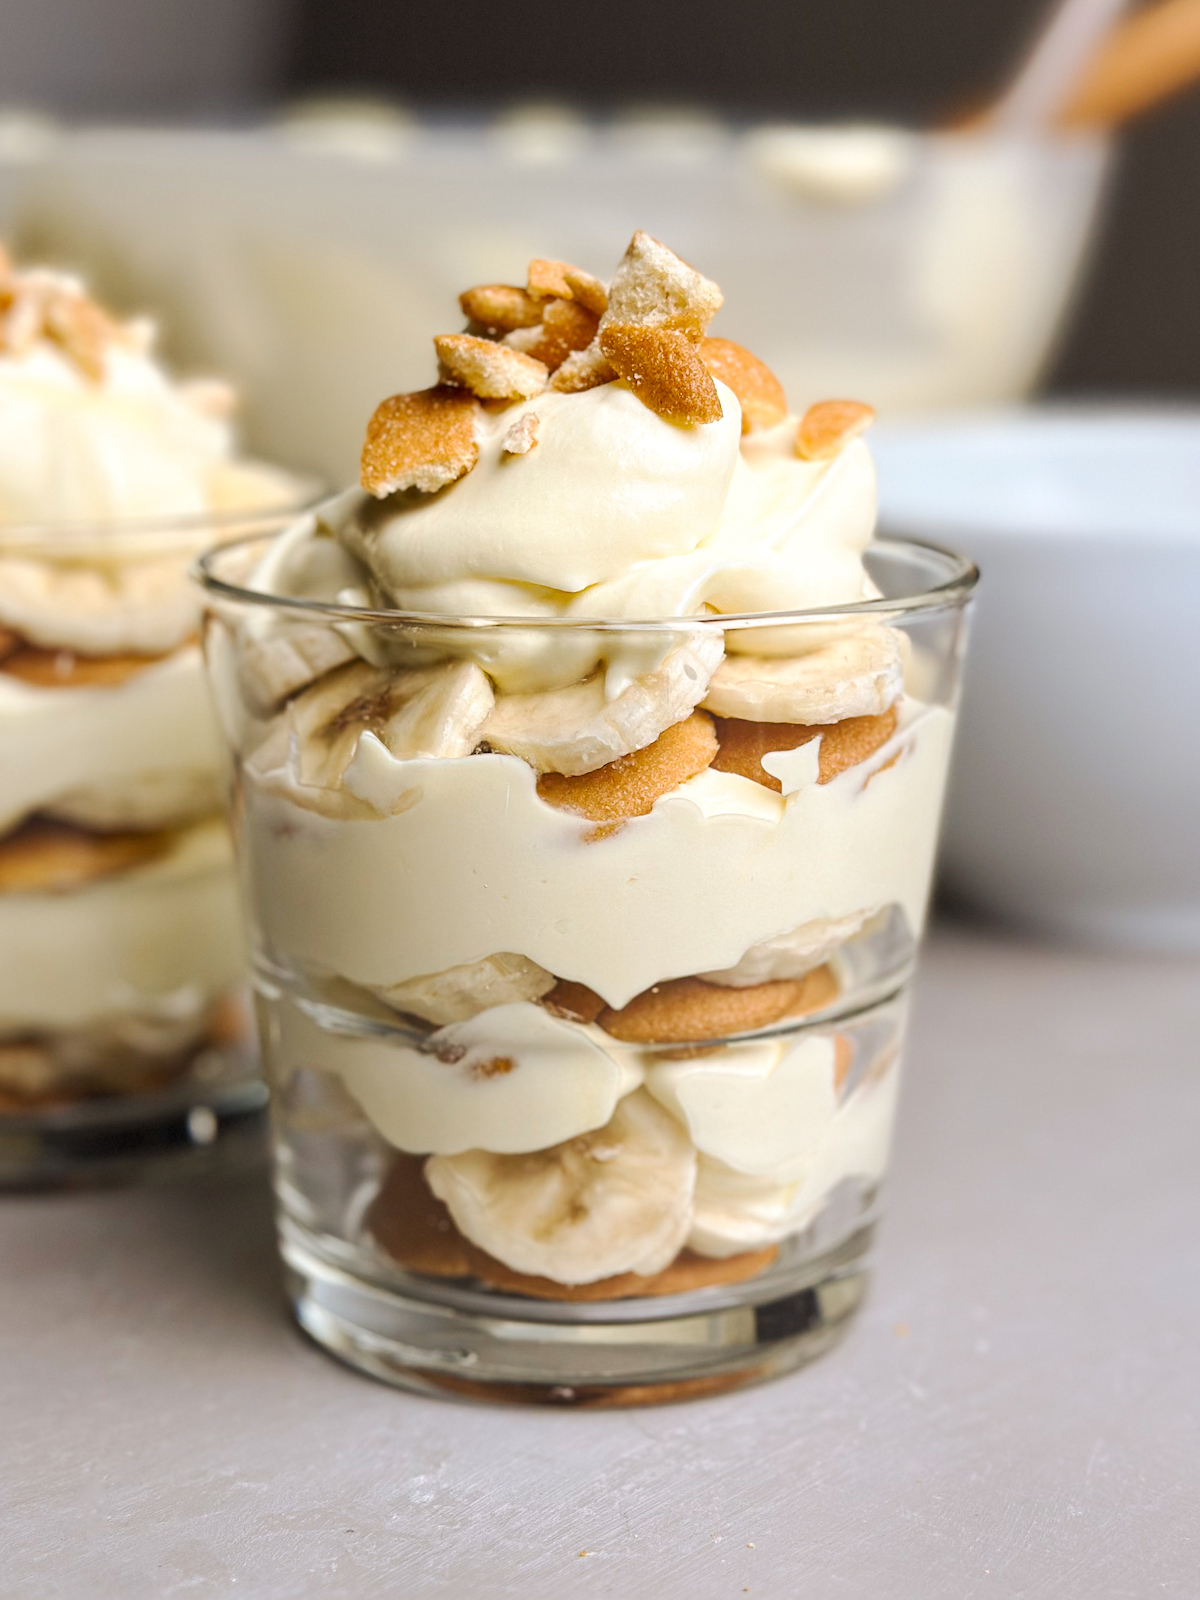 Magnolia Bakery’s Banana Pudding Recipe